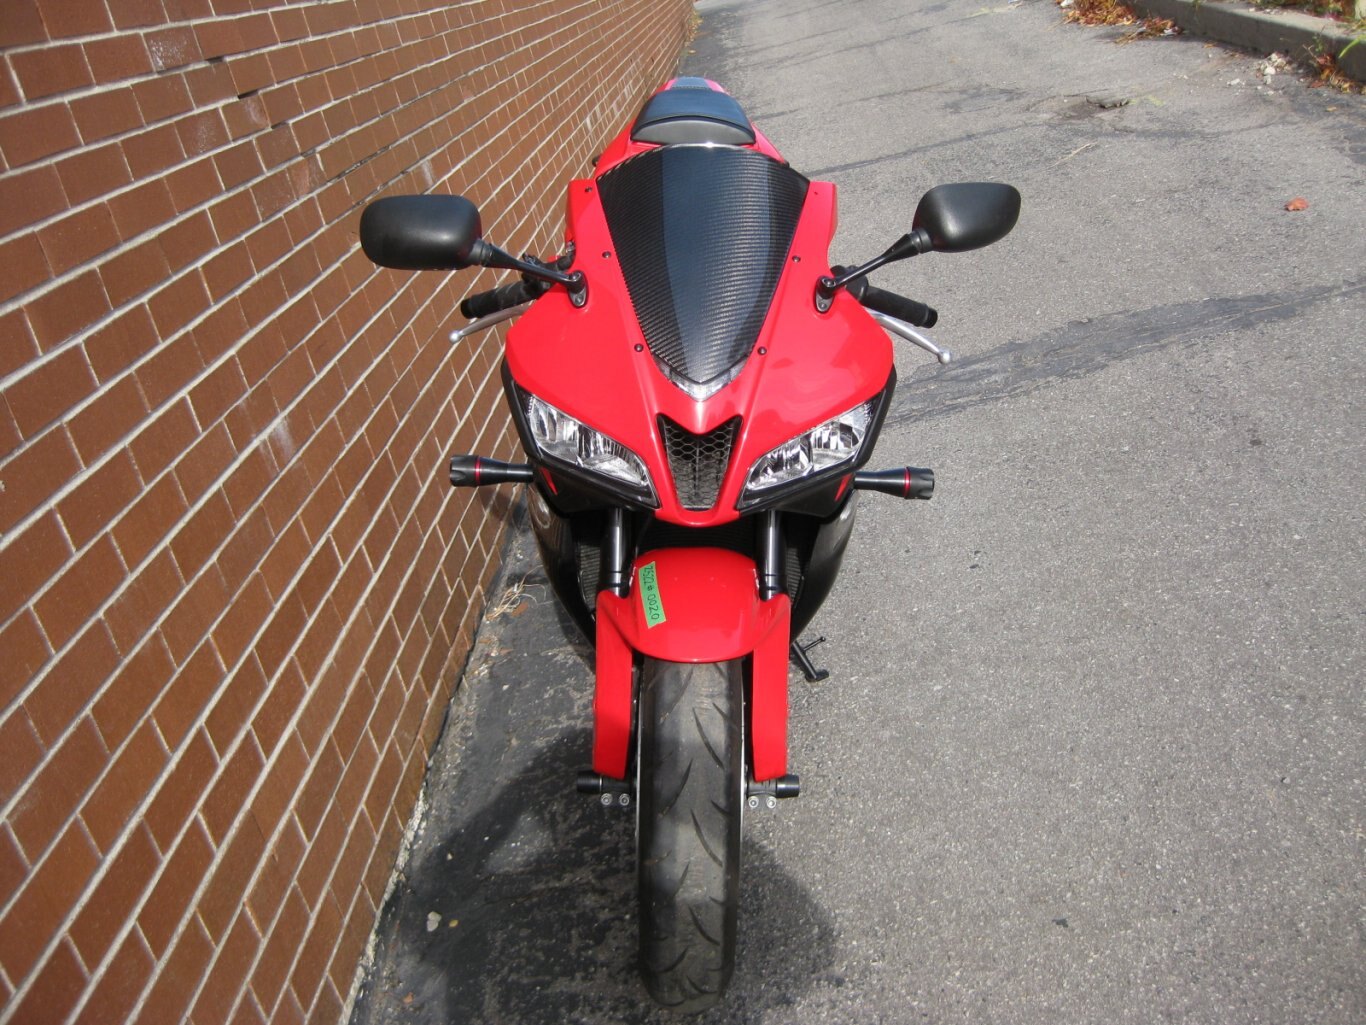 2011 Honda CBR600RR